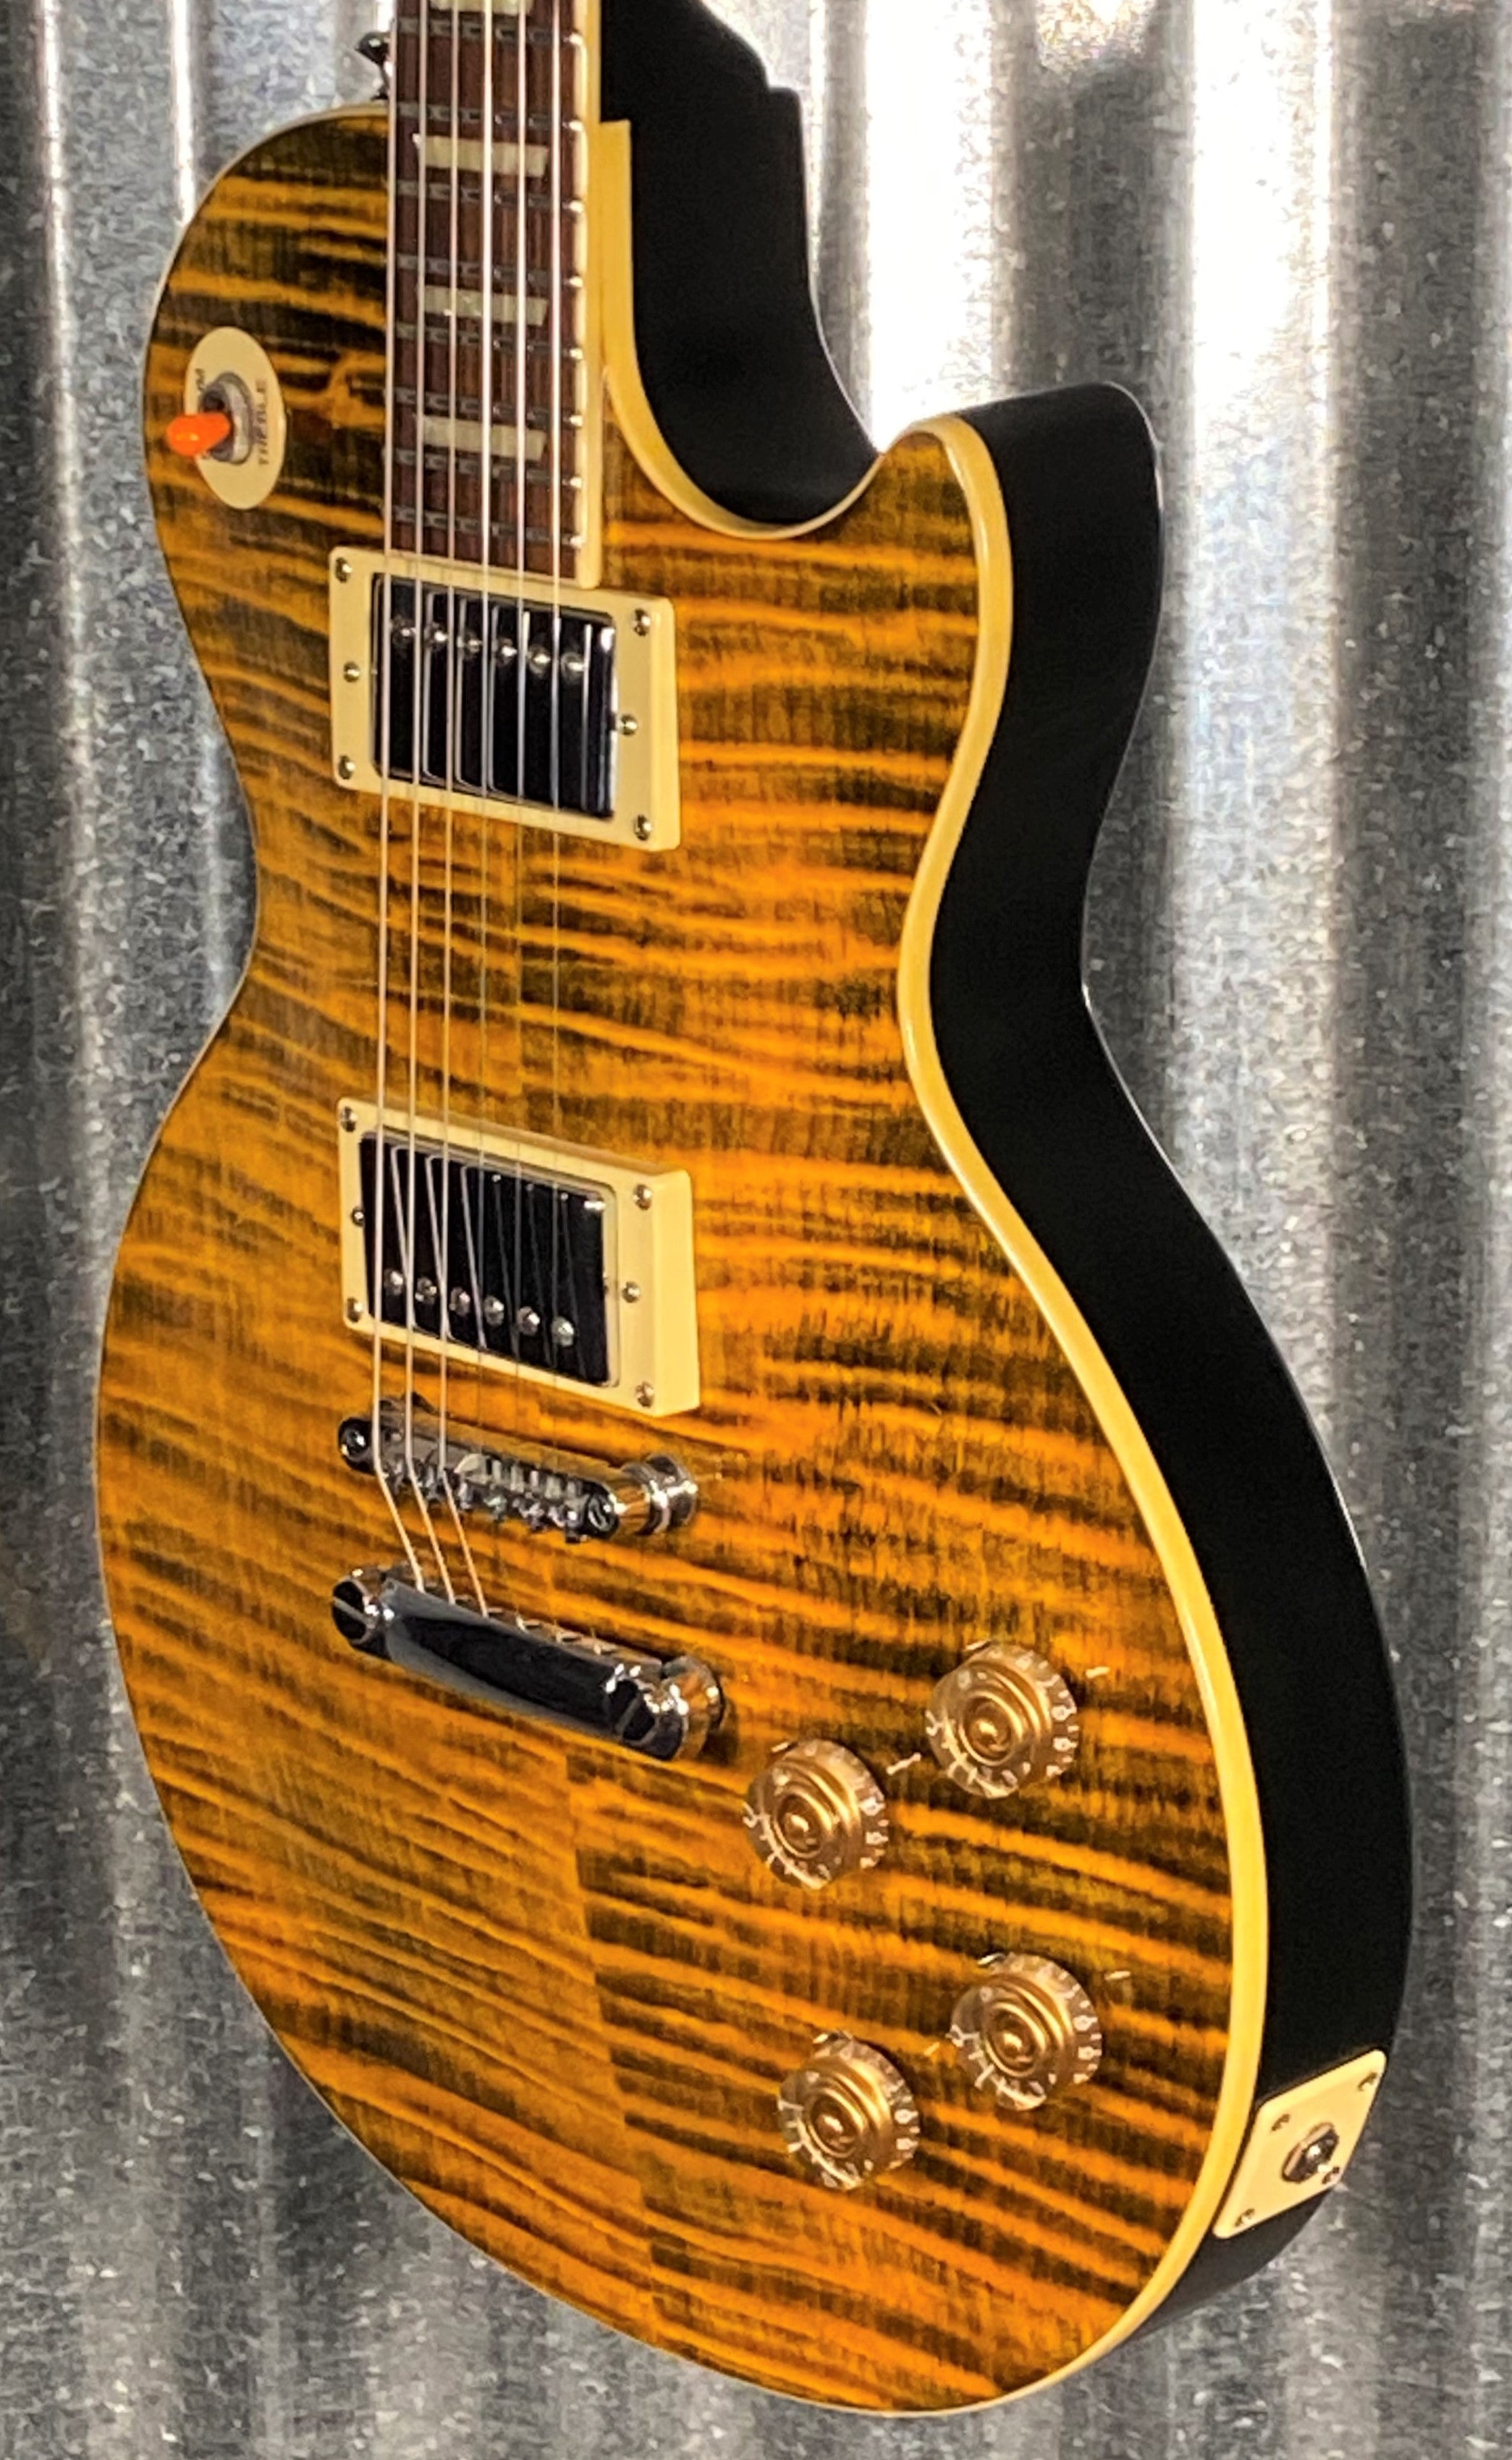 Epiphone Joe Perry Signature Boneyard Les Paul Standard Guitar & Case